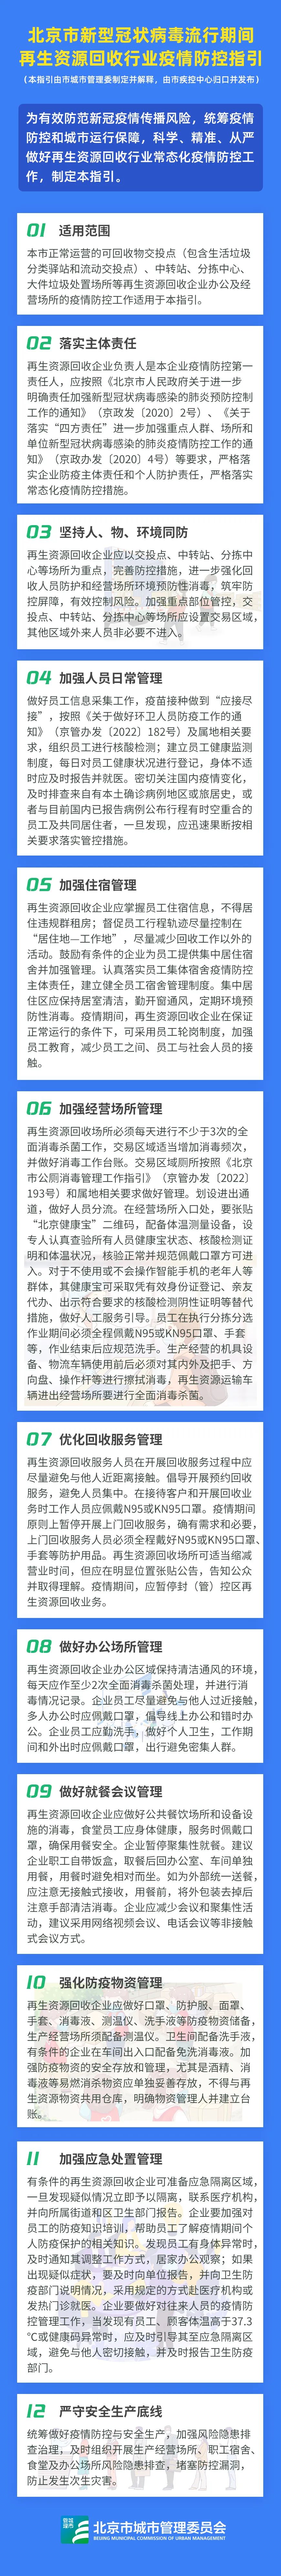 6.22北京市新型冠状病毒流行期间再生资源回收行业疫情防控指引.jpg